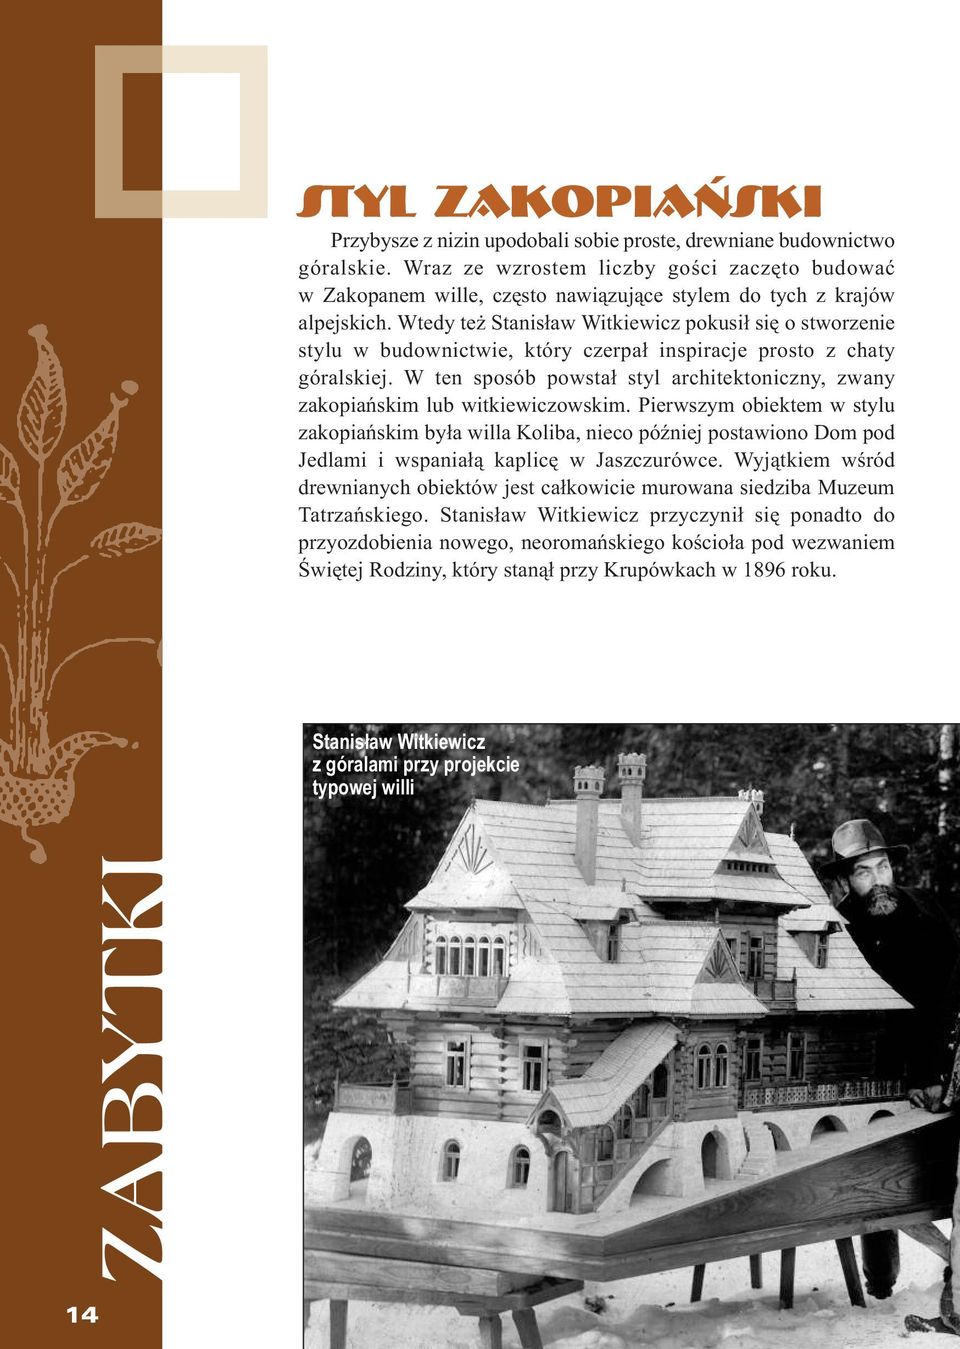 Wtedy też Stanisław Witkiewicz pokusił się o stworzenie stylu w budownictwie, który czerpał inspiracje prosto z chaty góralskiej.